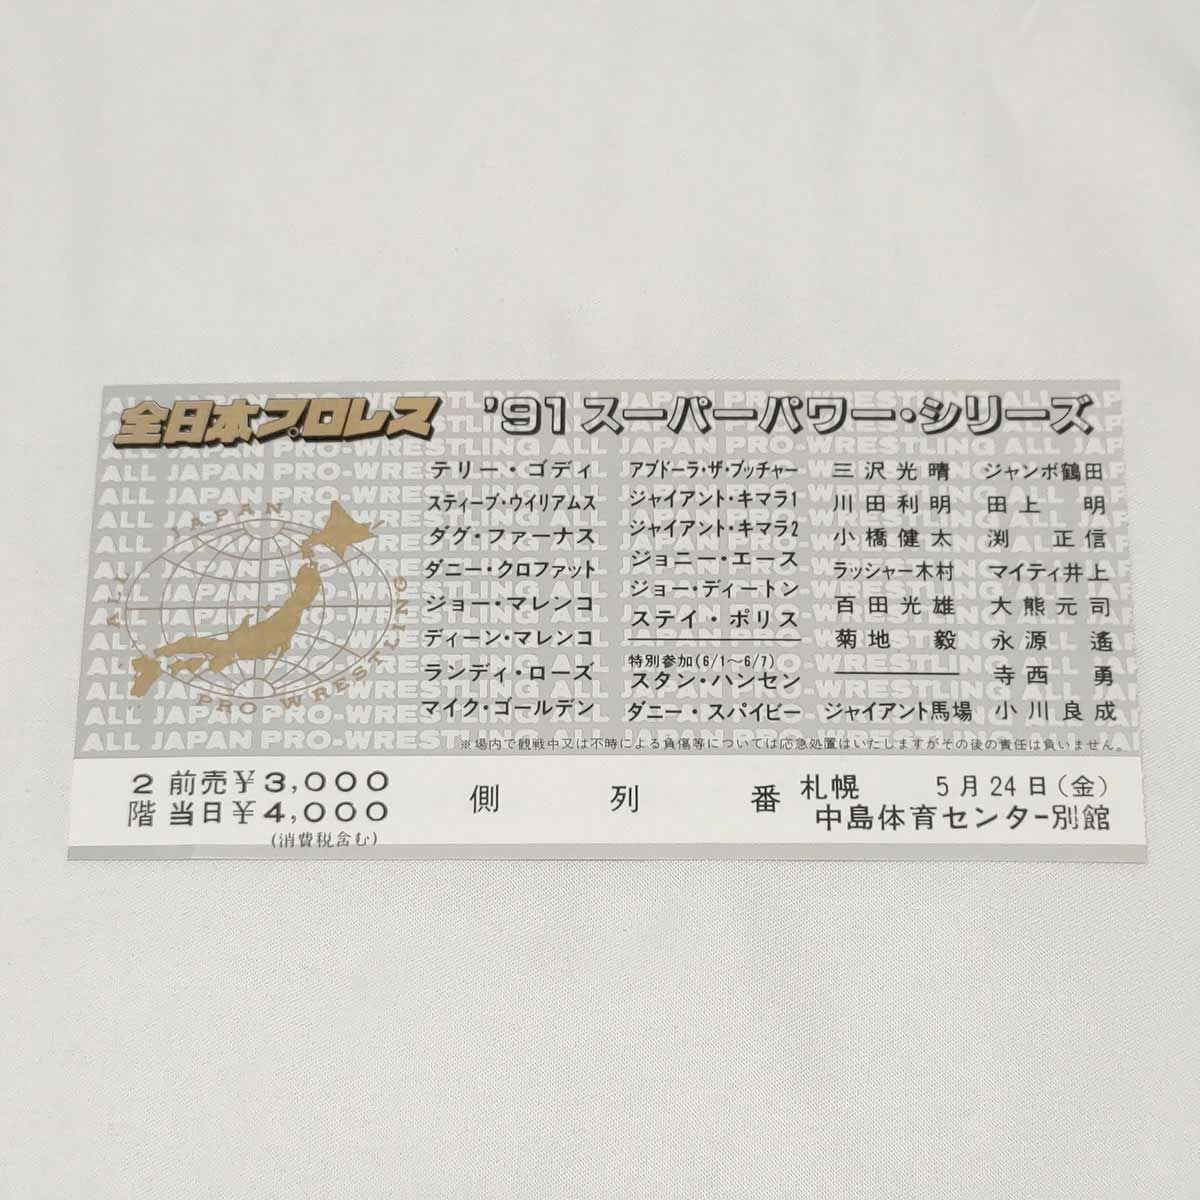 パンフレット 全日本プロレス ‘91スーパーパワーシリーズ ※スタンプあり チケット半券あり - メルカリShops